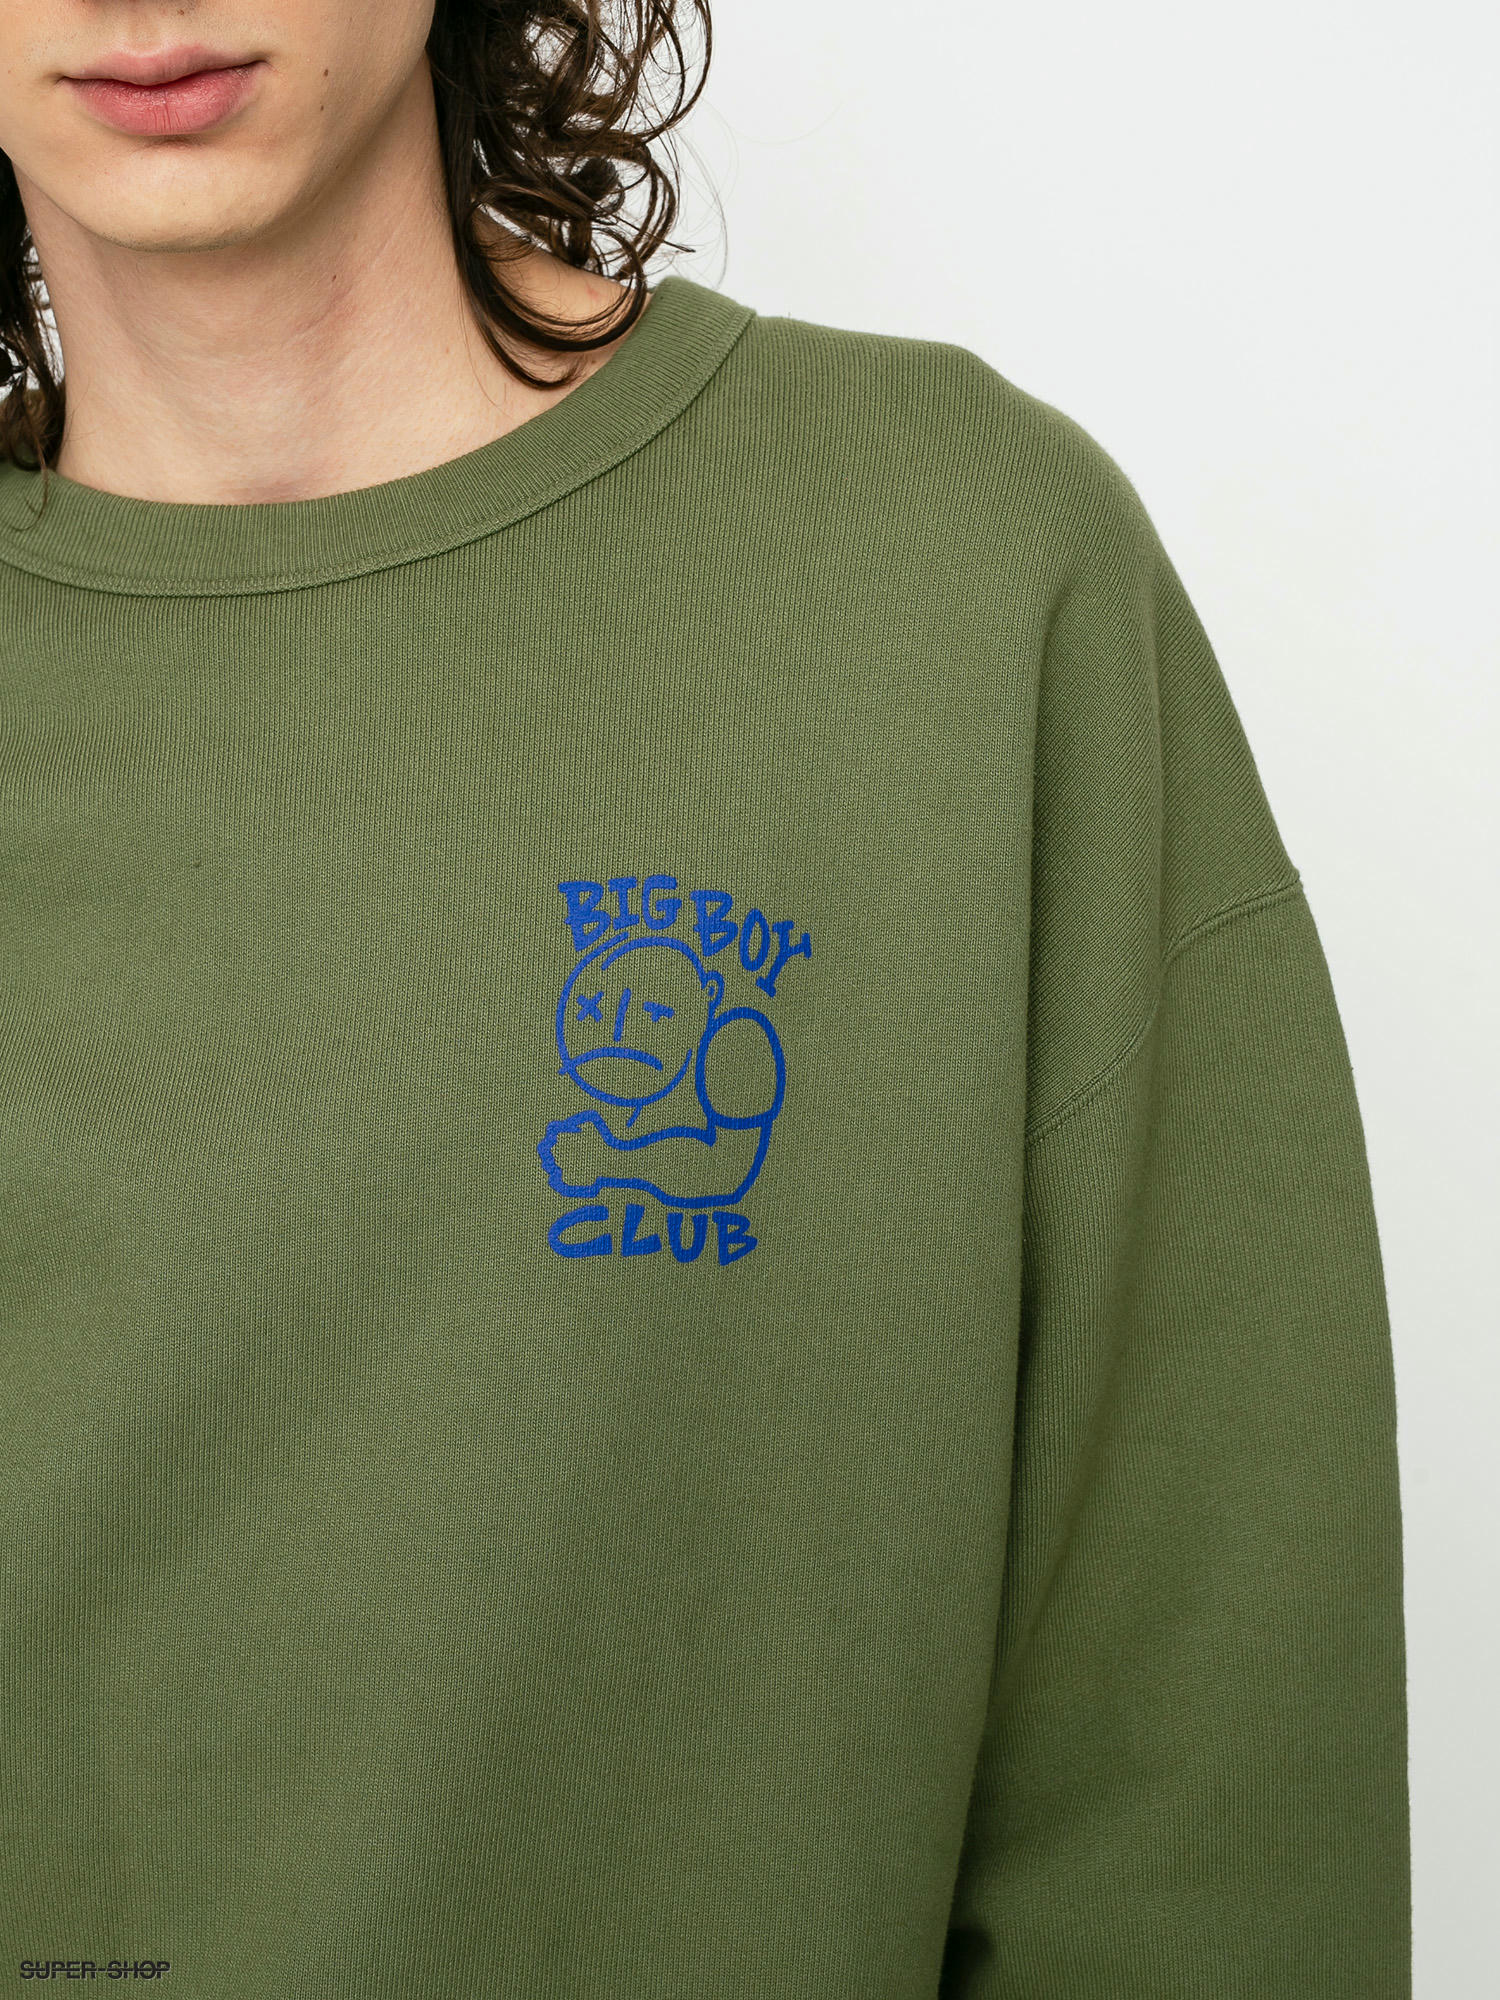 Polar Skate Big Boy Club Crew Sweatshirt (army green)